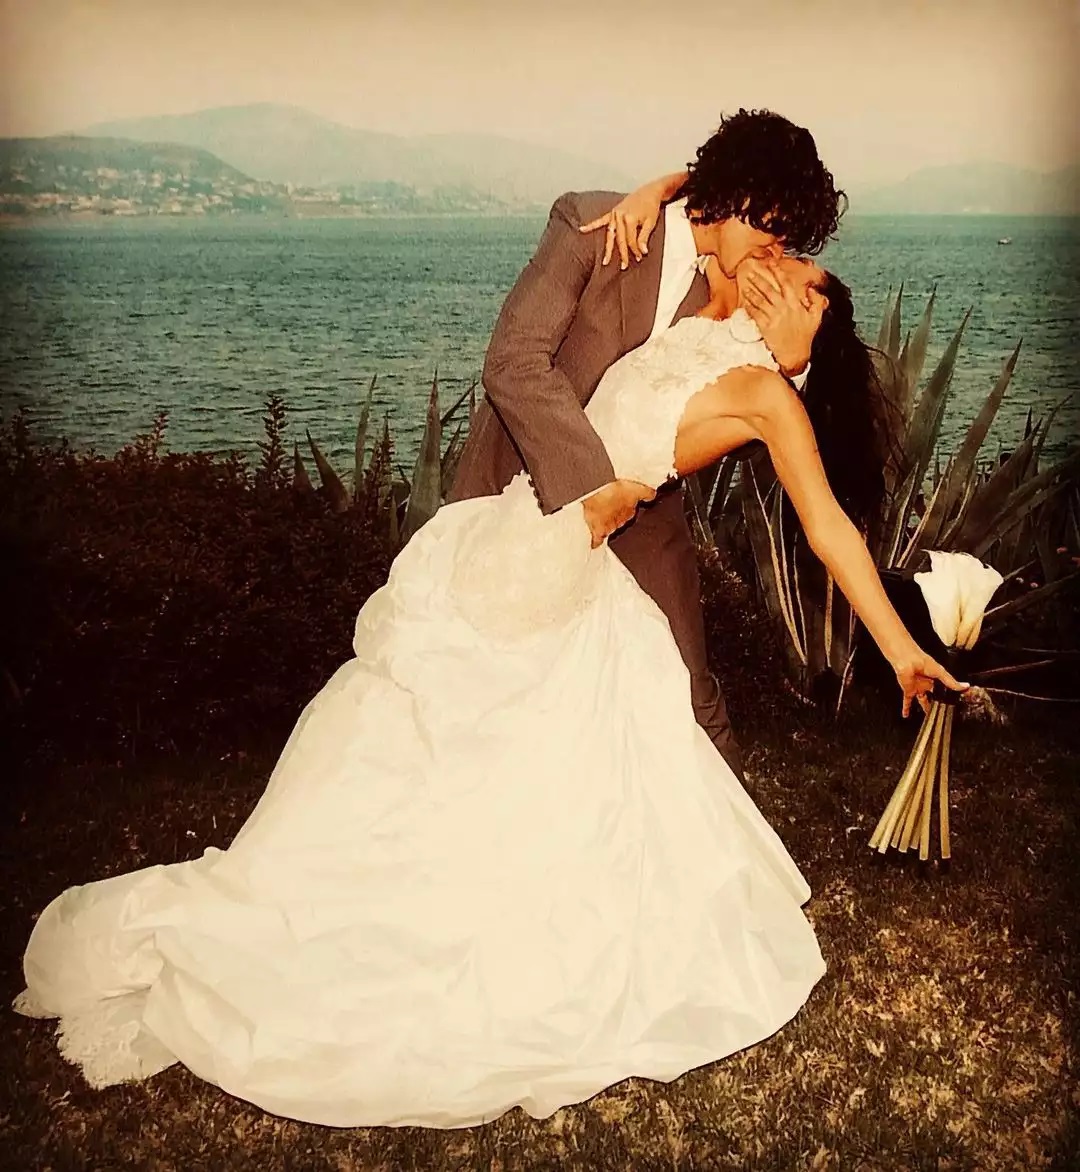 Αιμίλιος Χειλάκης- Αθηνά Μαξίμου: Γιόρτασαν 16 χρόνια γάμου με αδημοσίευτες φωτογραφίες από τον γάμο τους- Απλά υπέροχοι! (εικόνες)